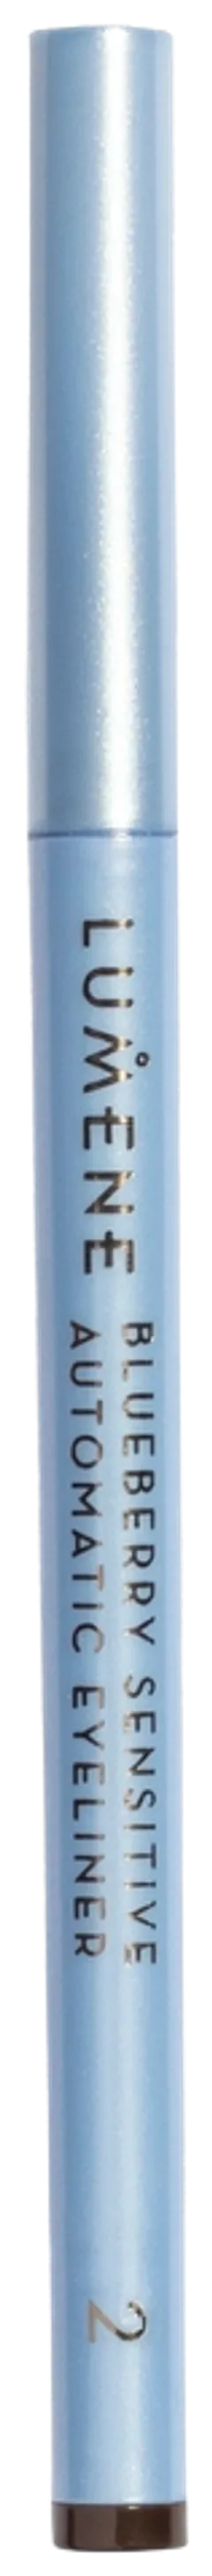 Lumene Blueberry Sensitive silmänrajauskynä 2 ruskea 0,35g - 1